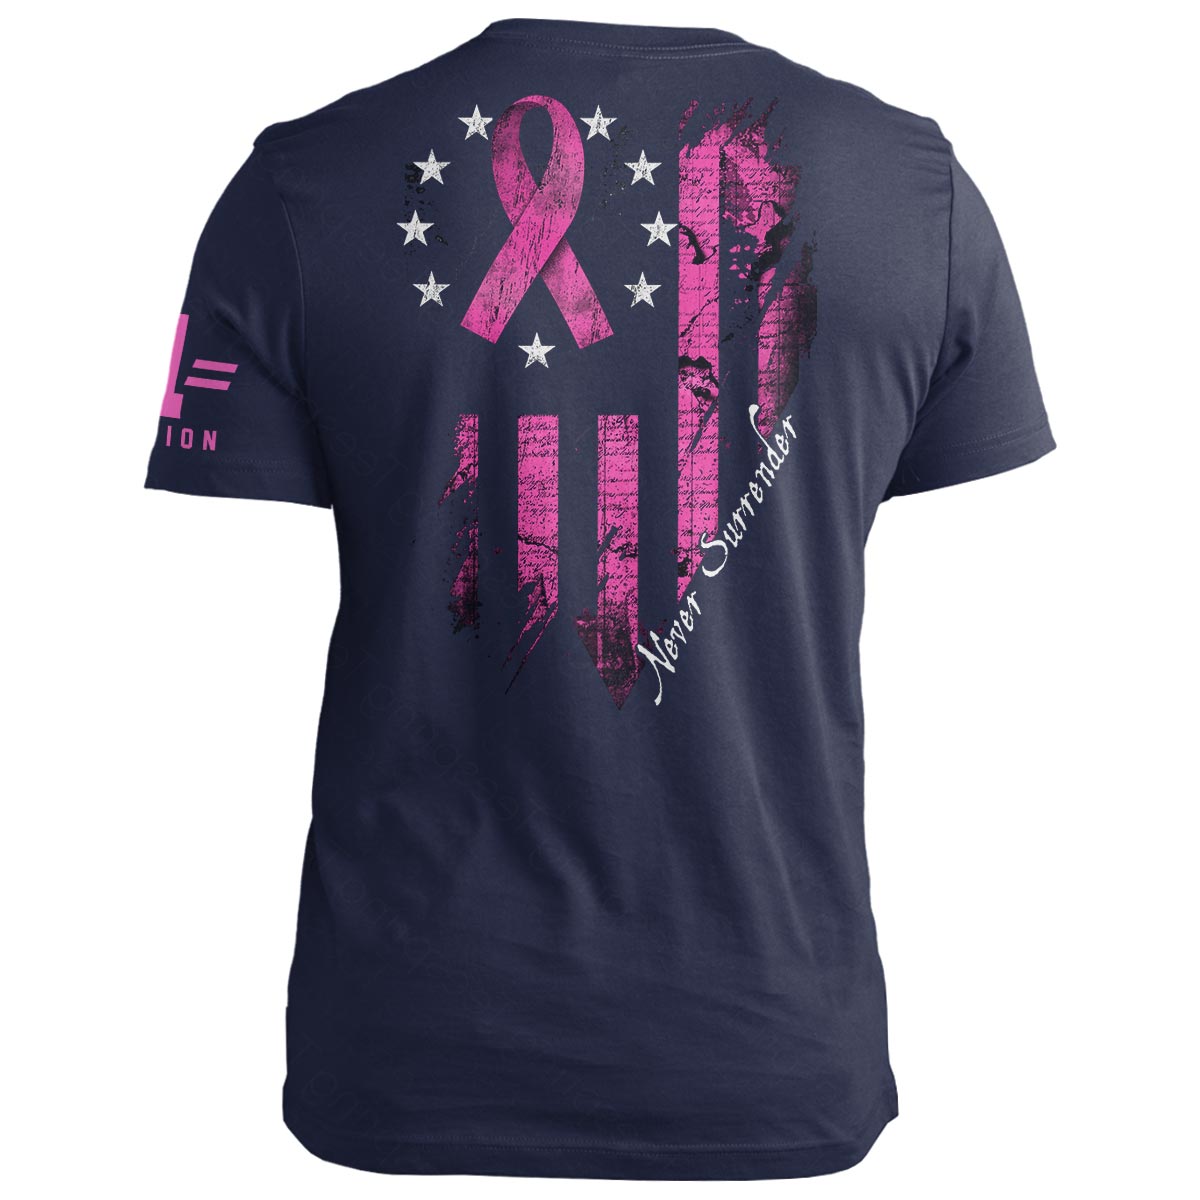 Never Surrender Breast Cancer Awareness